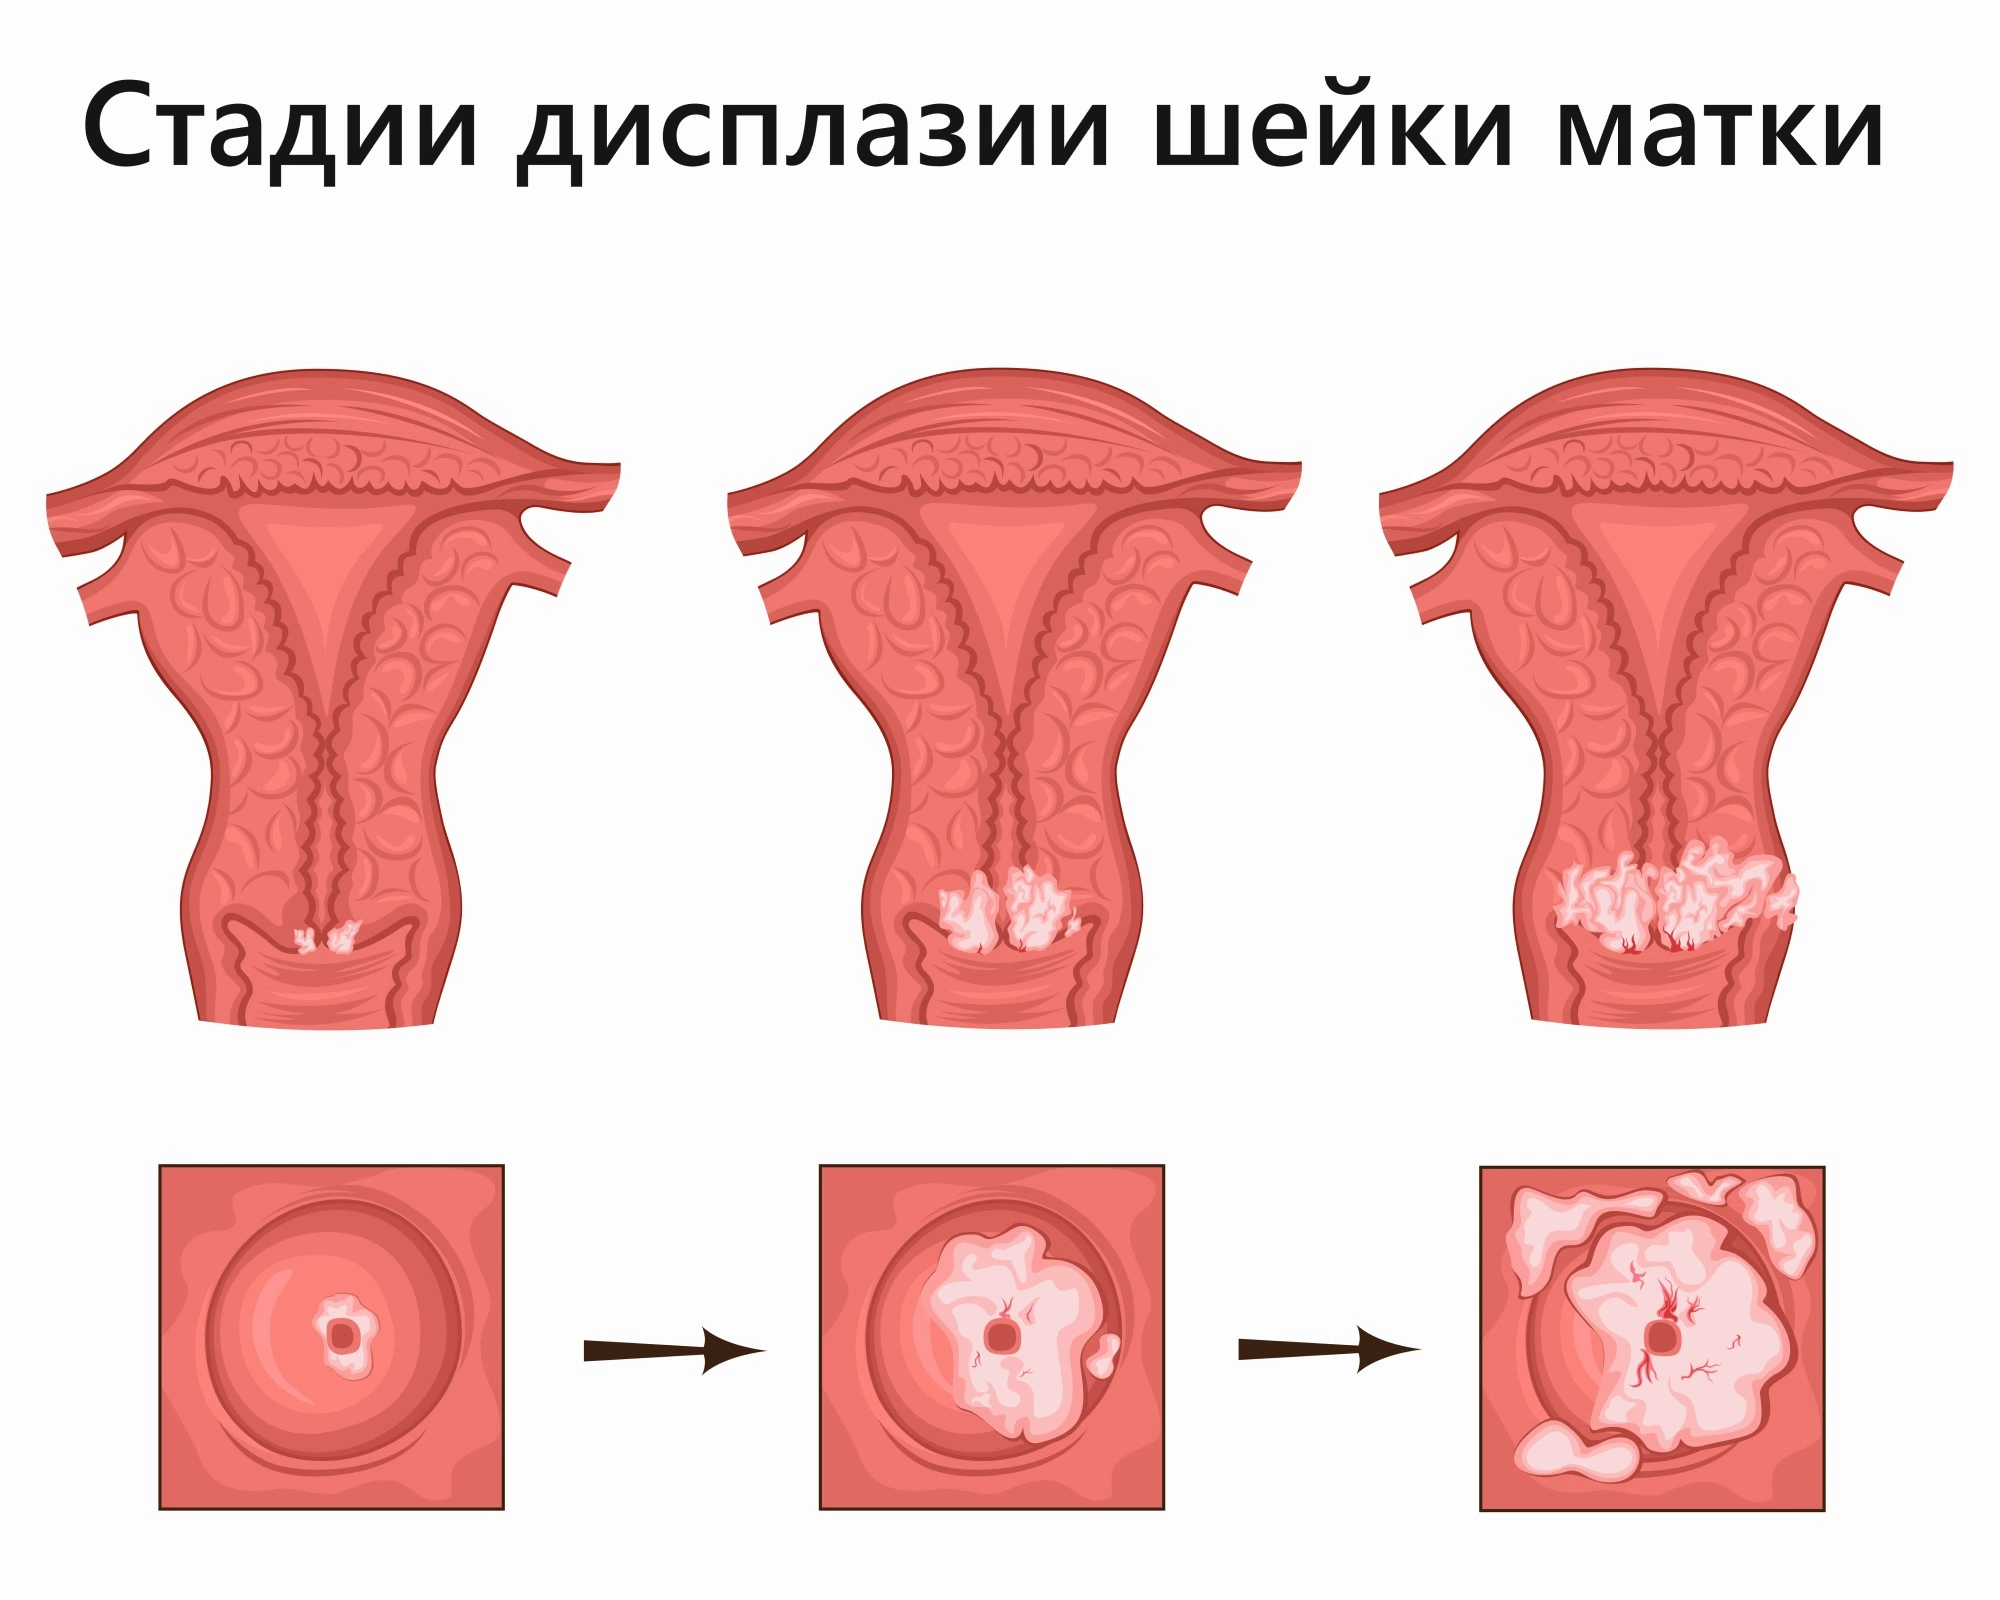 Дисплазия шейки матки - причины появления, симптомы заболевания, диагностика и способы лечения